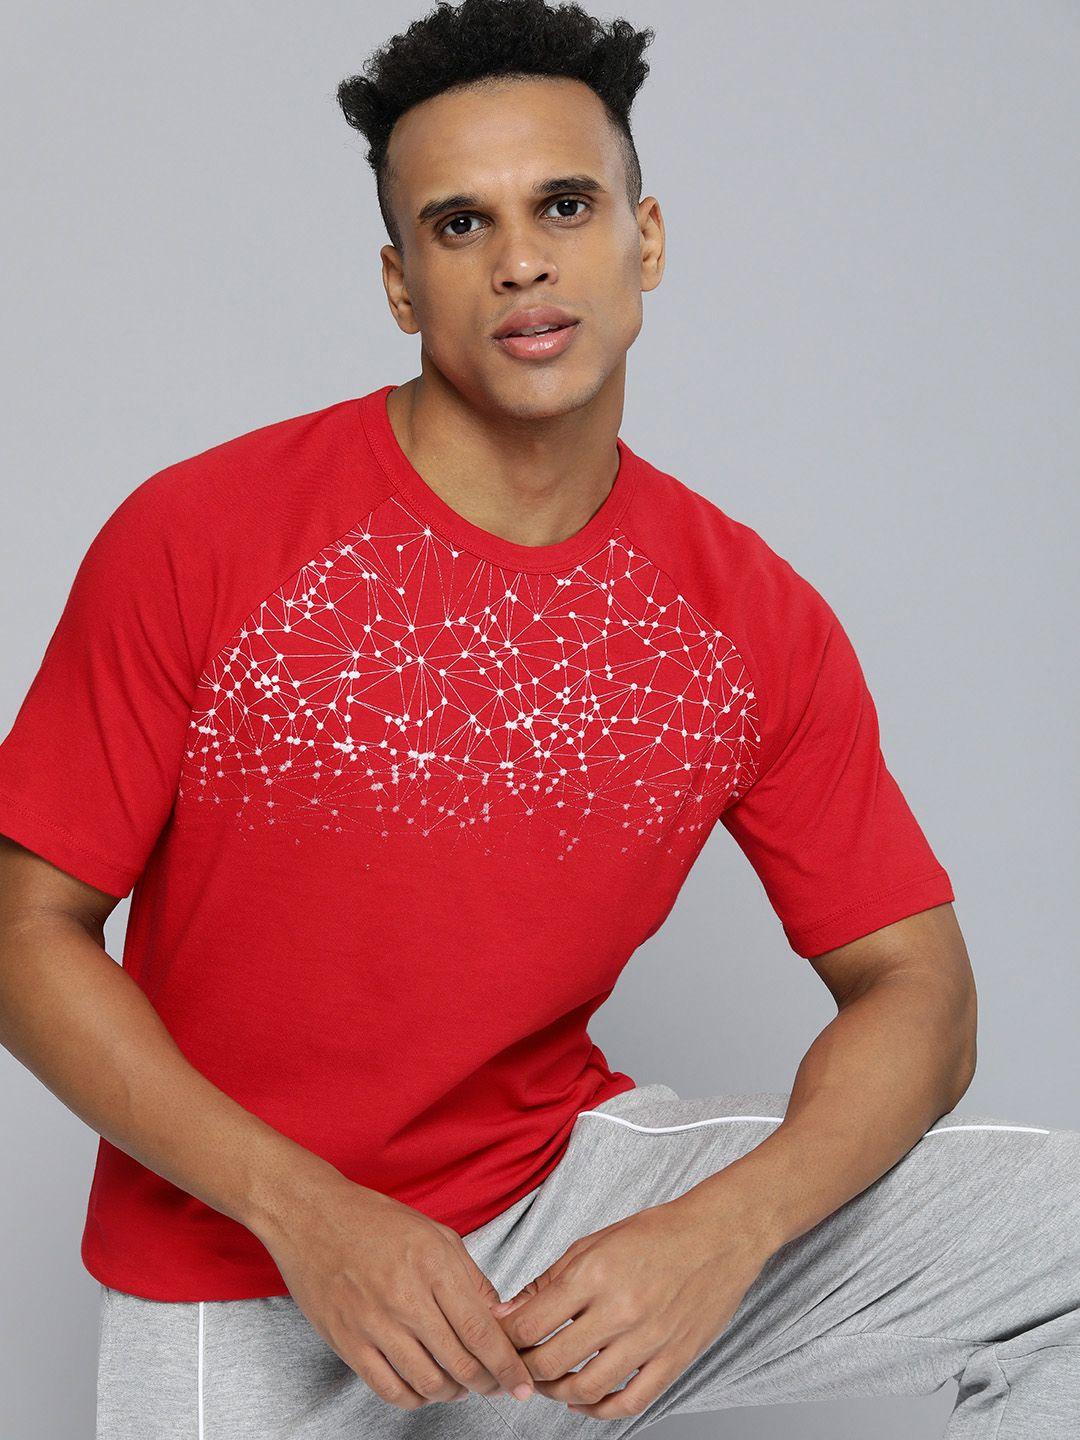 hrx by hrithik roshan lifestyle men red & white bio-wash geometric tshirts